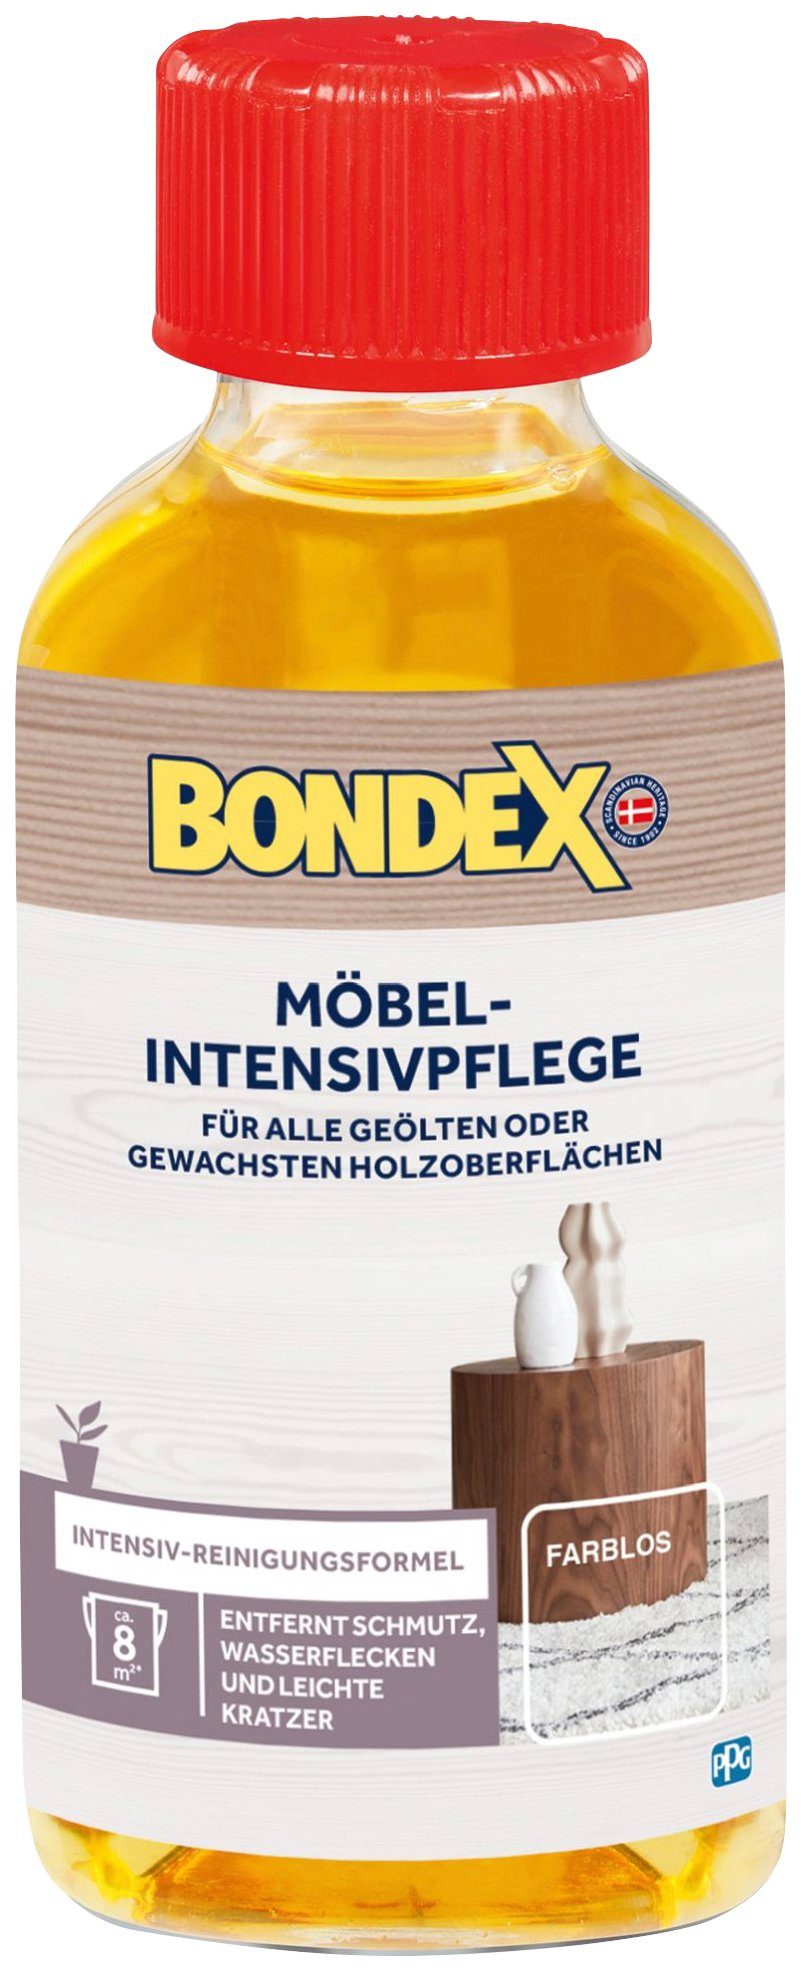 MÖBEL-INTENSIVPFLEGE l Bondex 0,15 Farblos Holzpflegeöl,